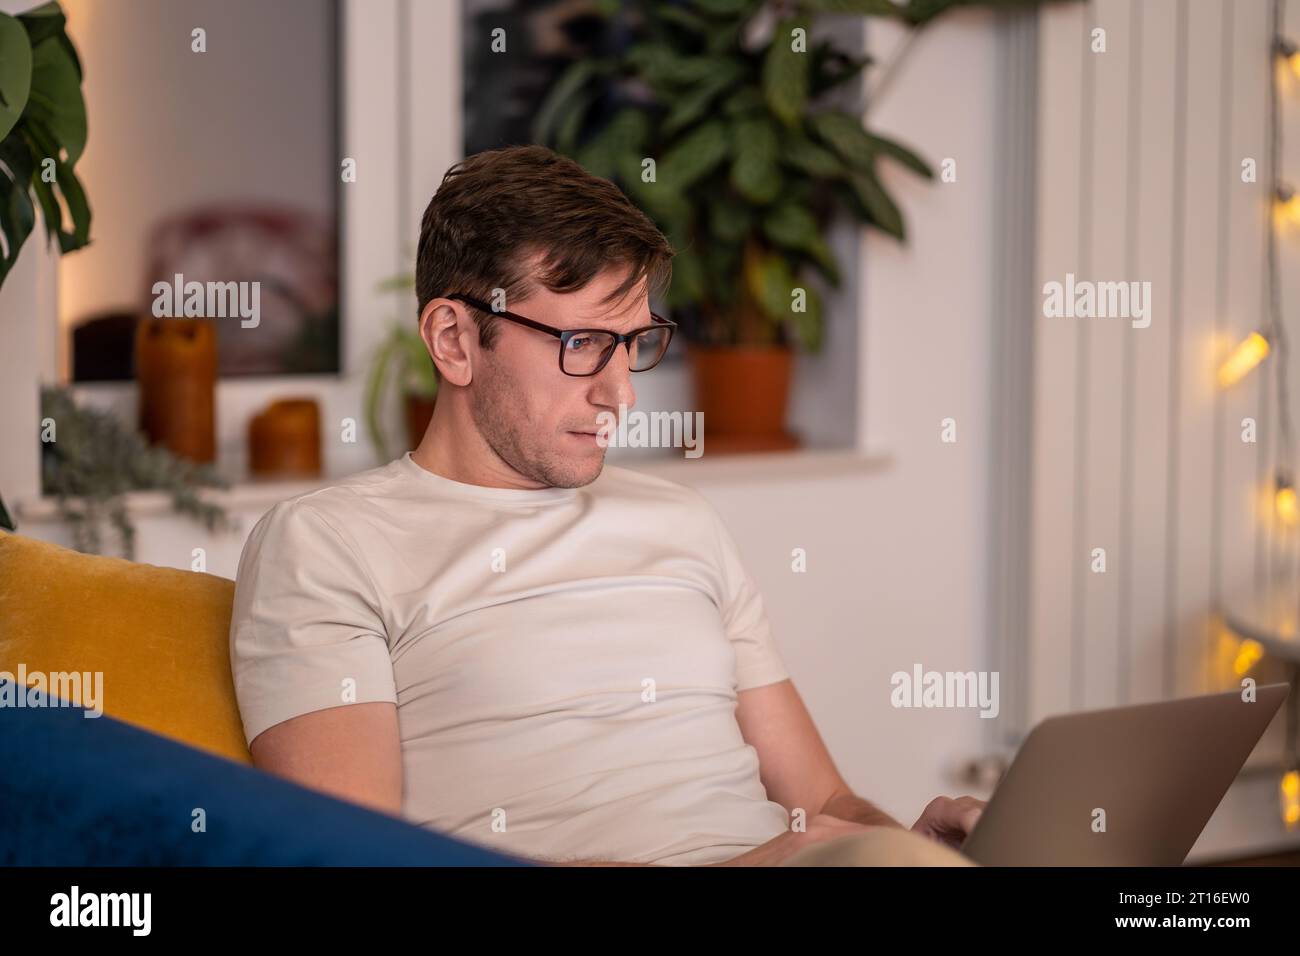 Un uomo seduto sul divano con un computer portatile sul grembo fa gli straordinari. Internet remoto online per studiare lavoro da casa Foto Stock